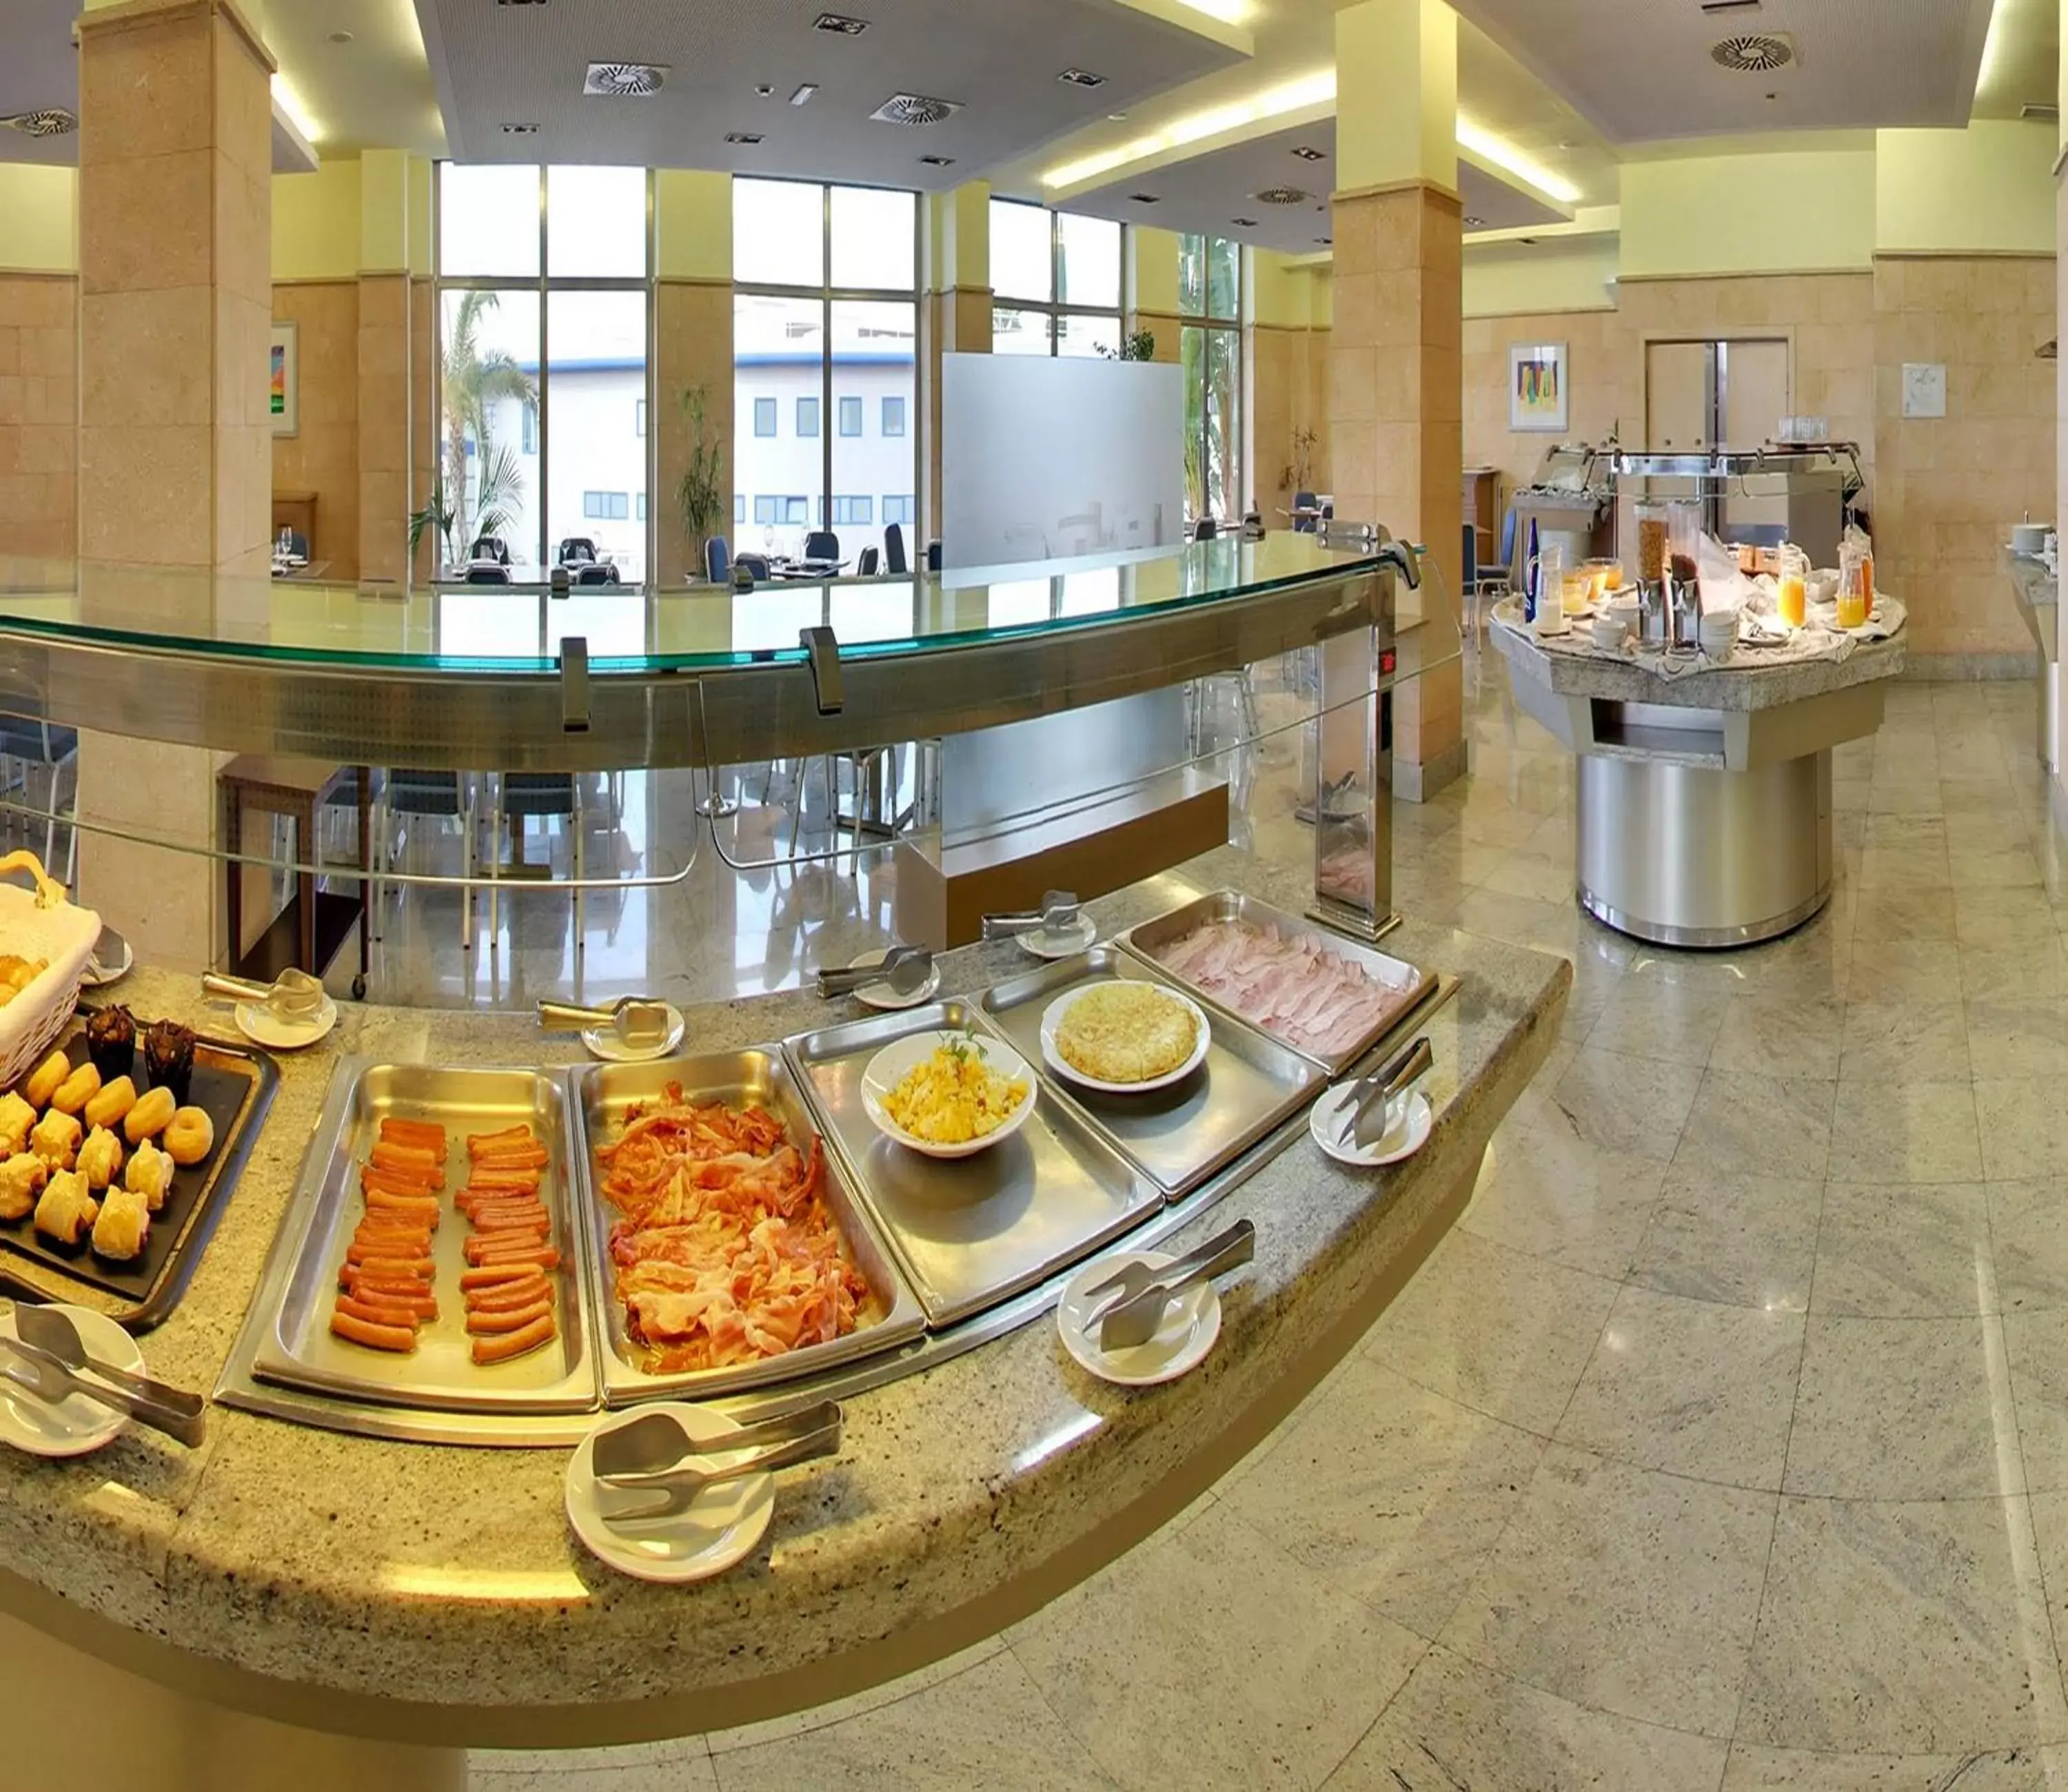 Buffet breakfast in Hotel Mas Camarena